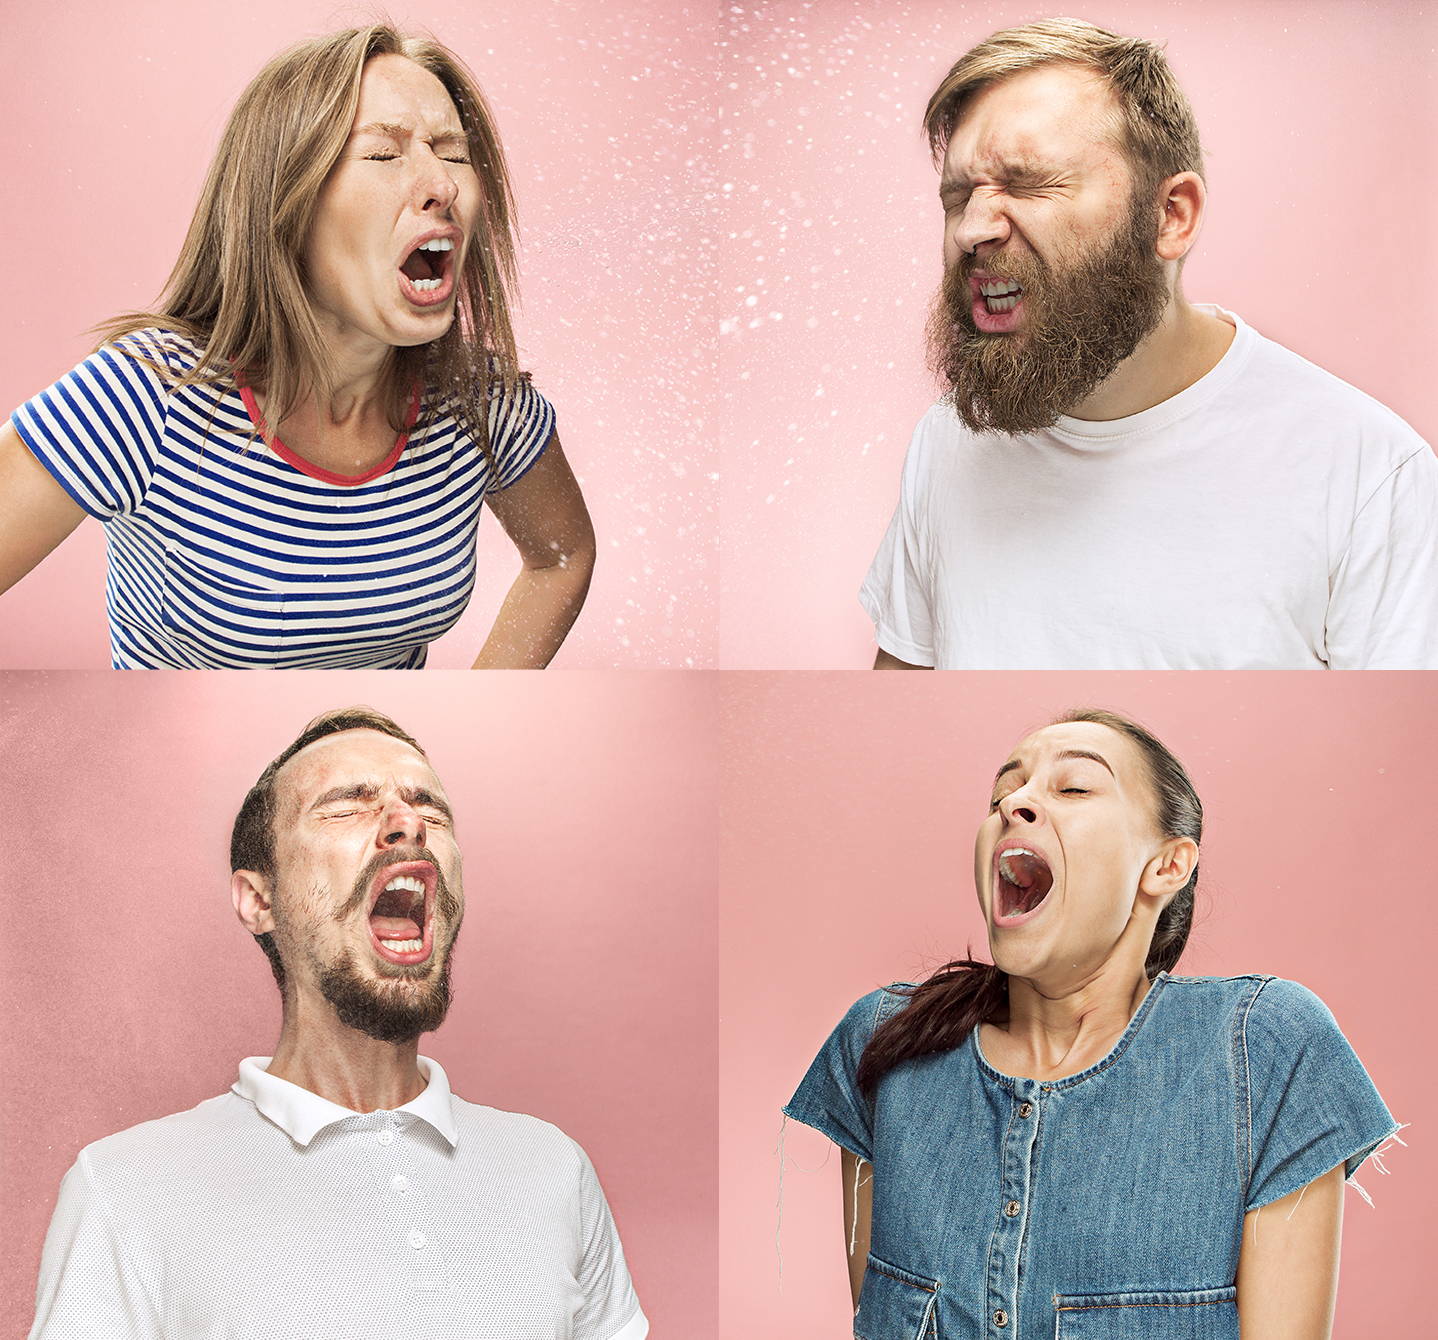 Montaggio di quattro immagini di persone che starnutiscono, forse a causa di allergie. Sono tutti in mezzo a un sonoro «ETCÌ!».